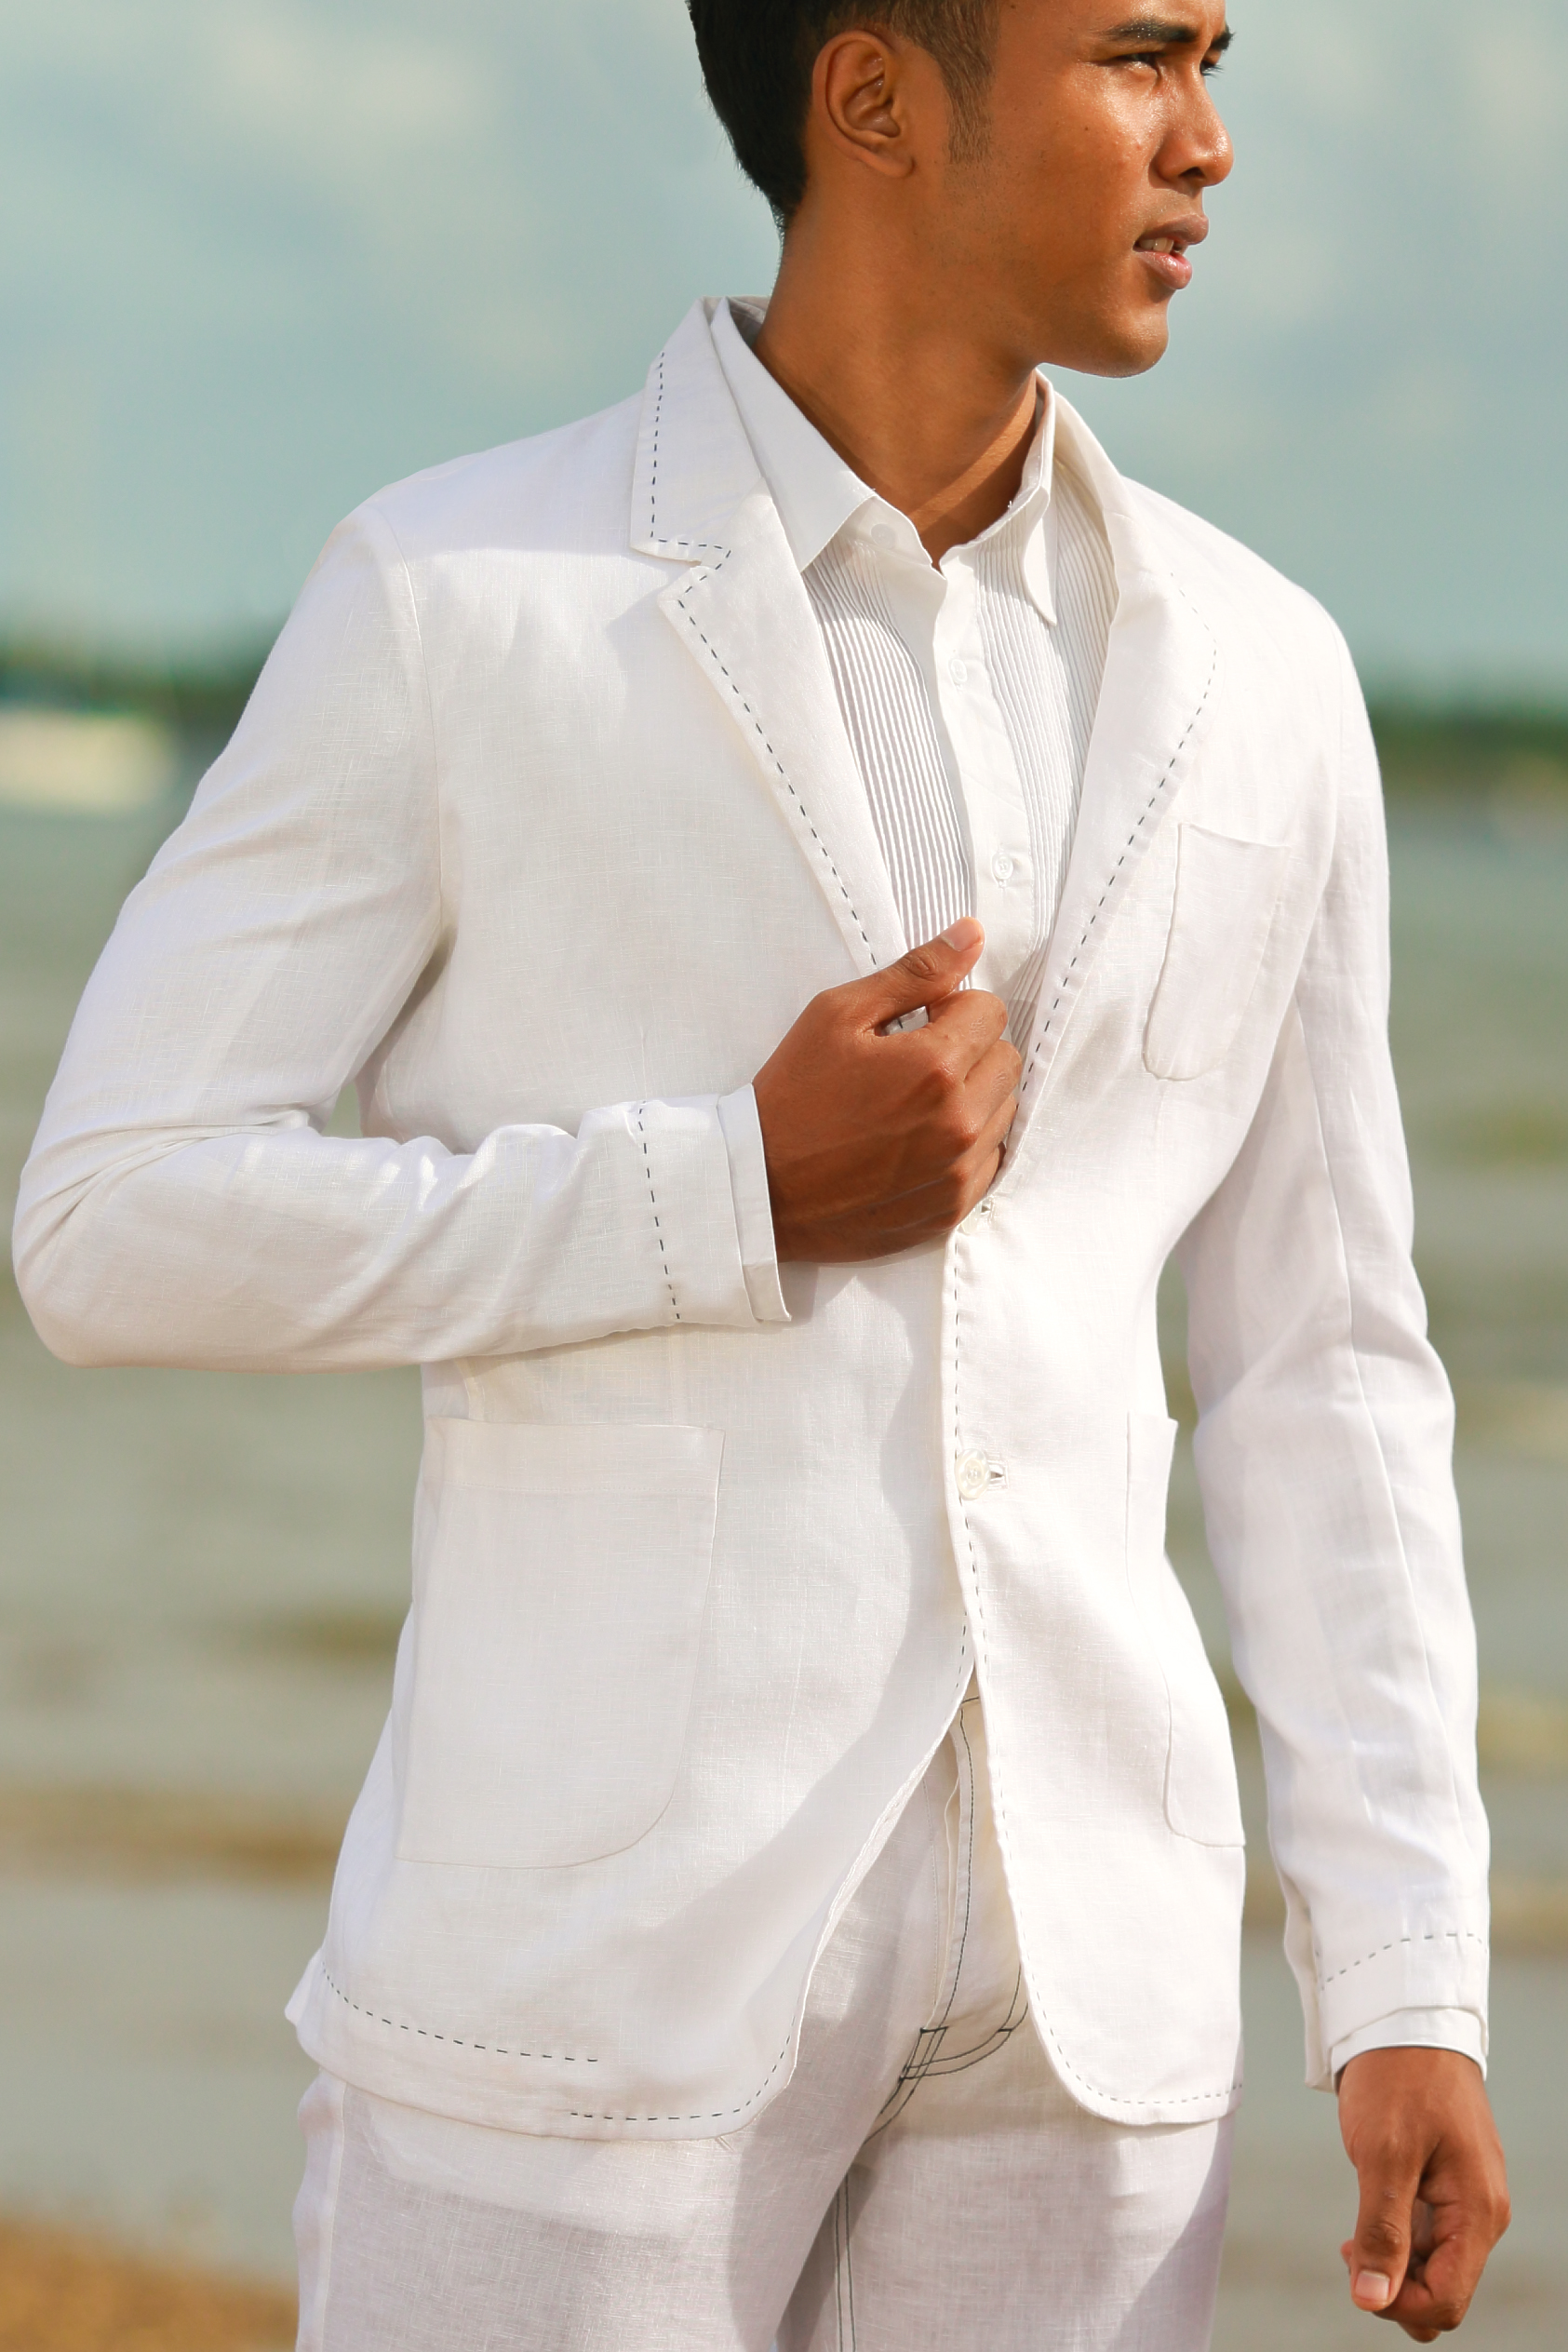 Men's Custom Linen Suit Jacket - Beach Wedding - Island ...